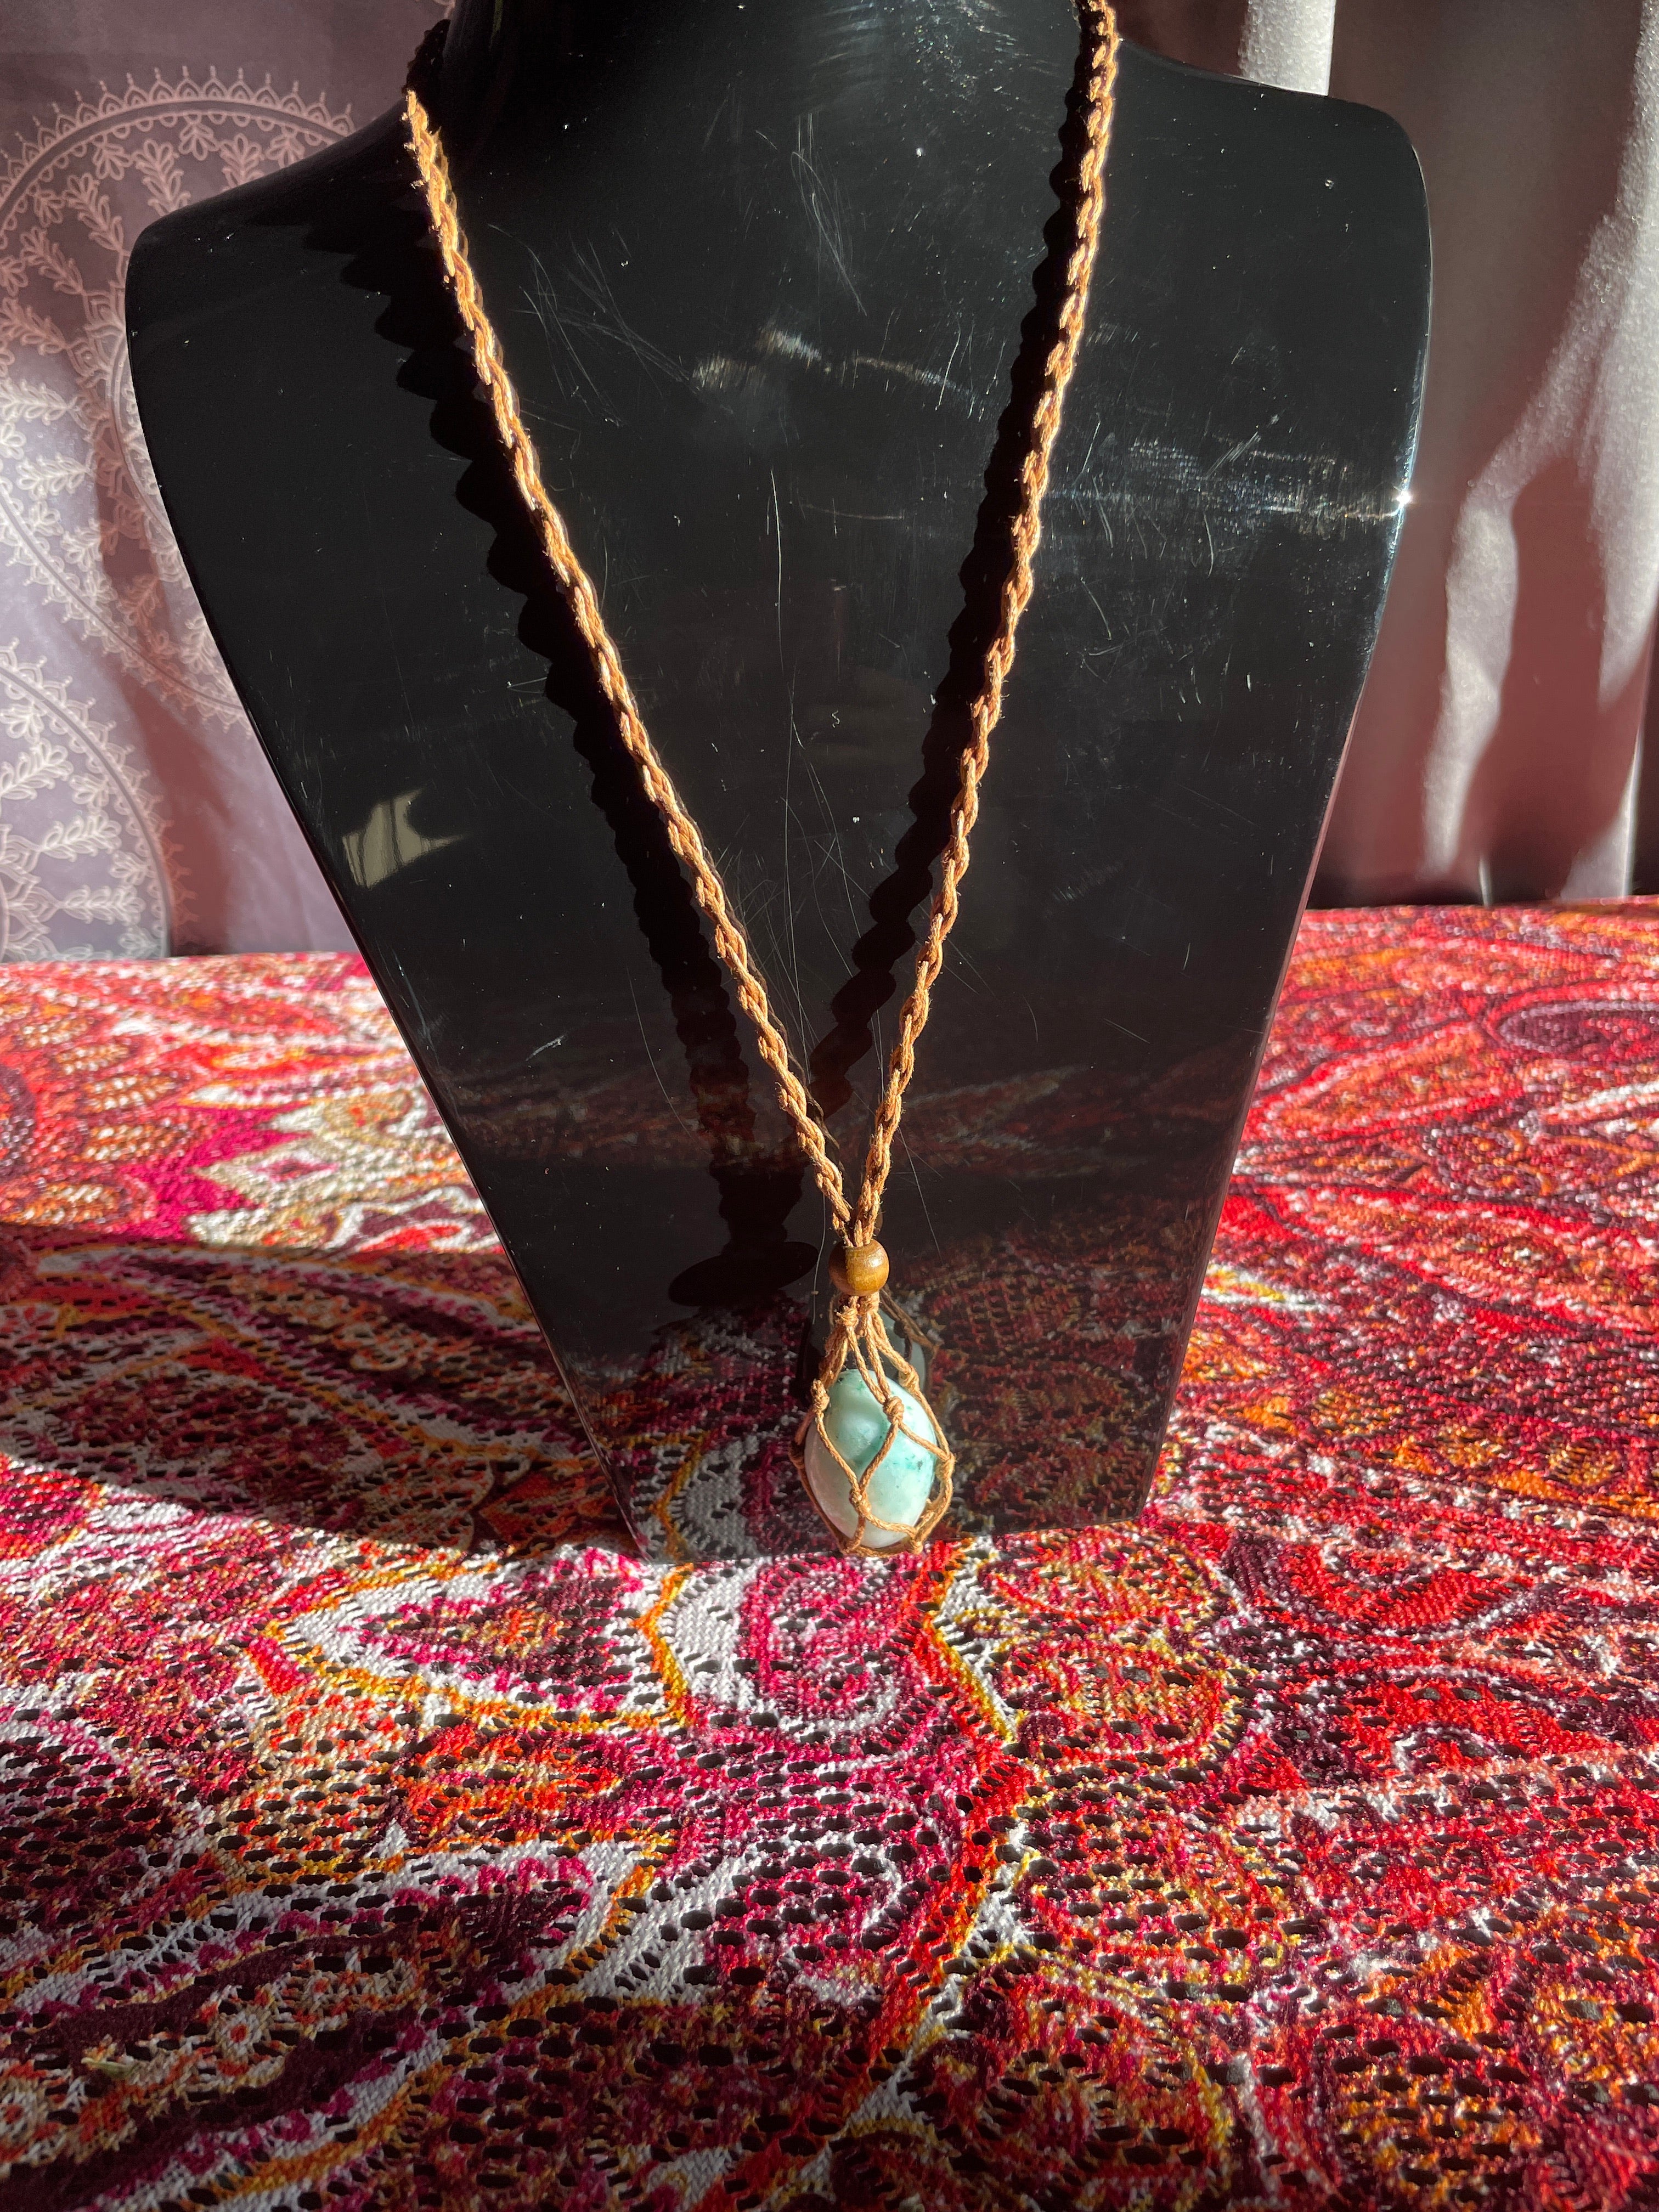 Phoenix stone necklace